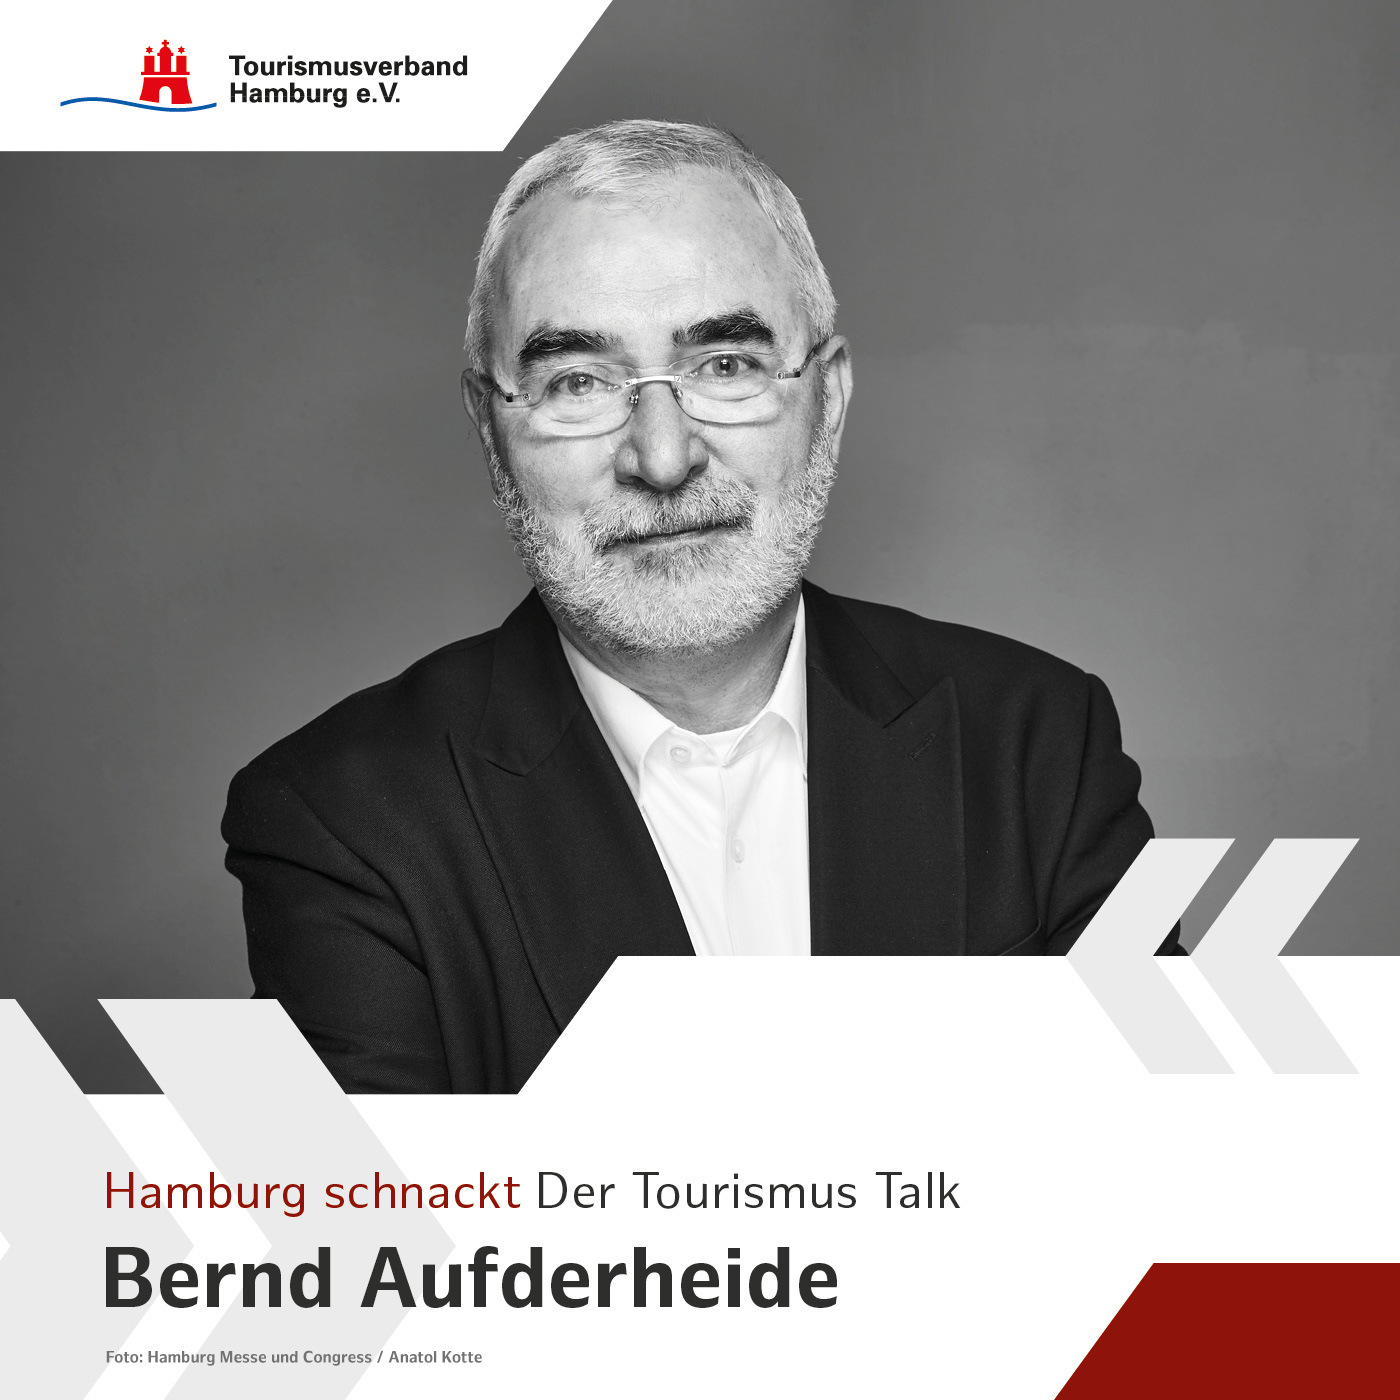 Hamburg schnackt mit Bernd Aufderheide